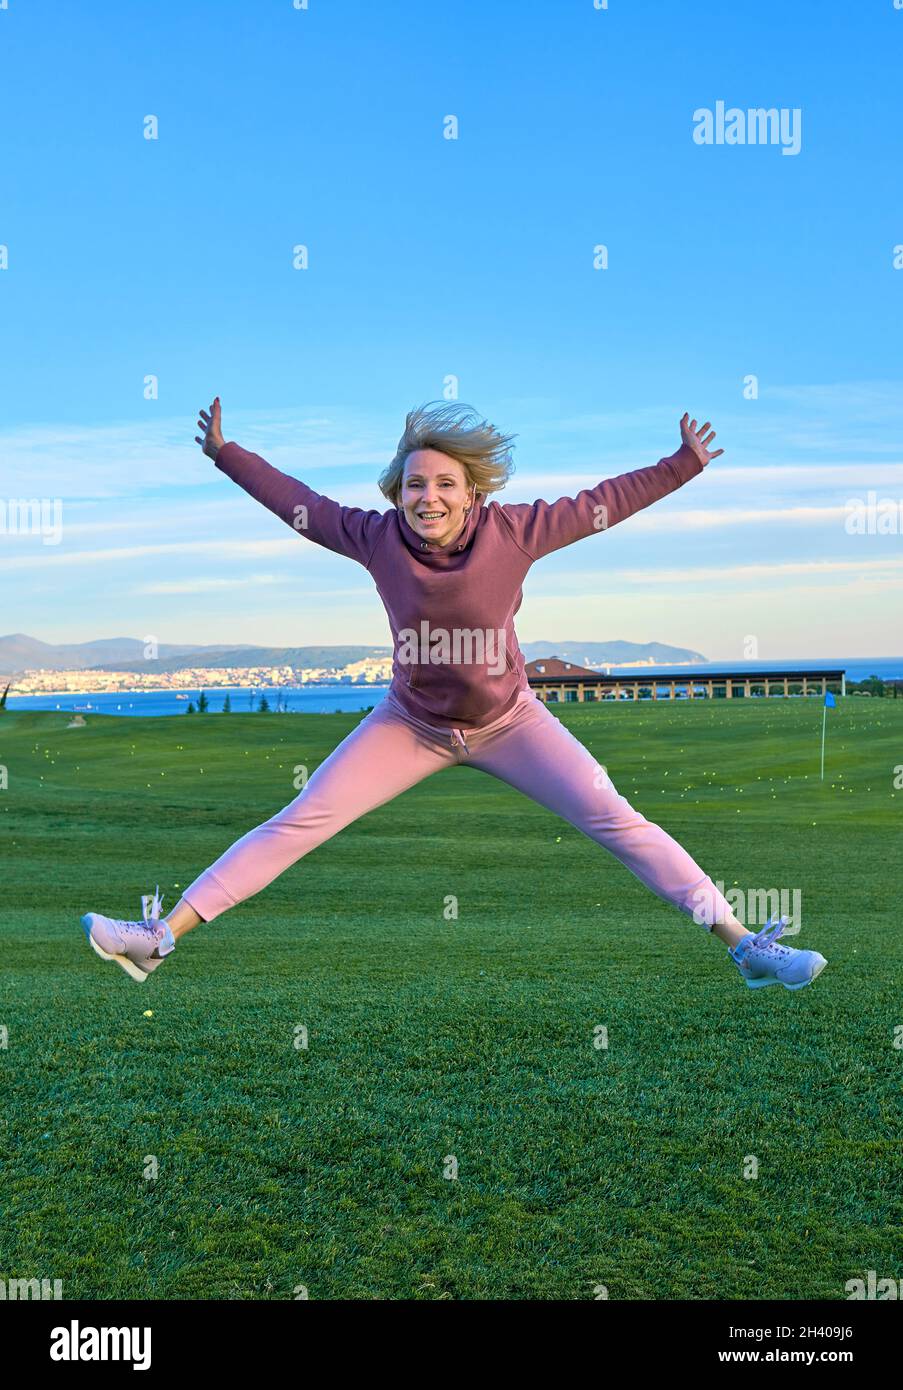 Glückliches Mädchen Golfer springen in der Luft mit erhobenen Armen und Golfschläger in der Hand nach erfolgreichem Schuss. Stockfoto